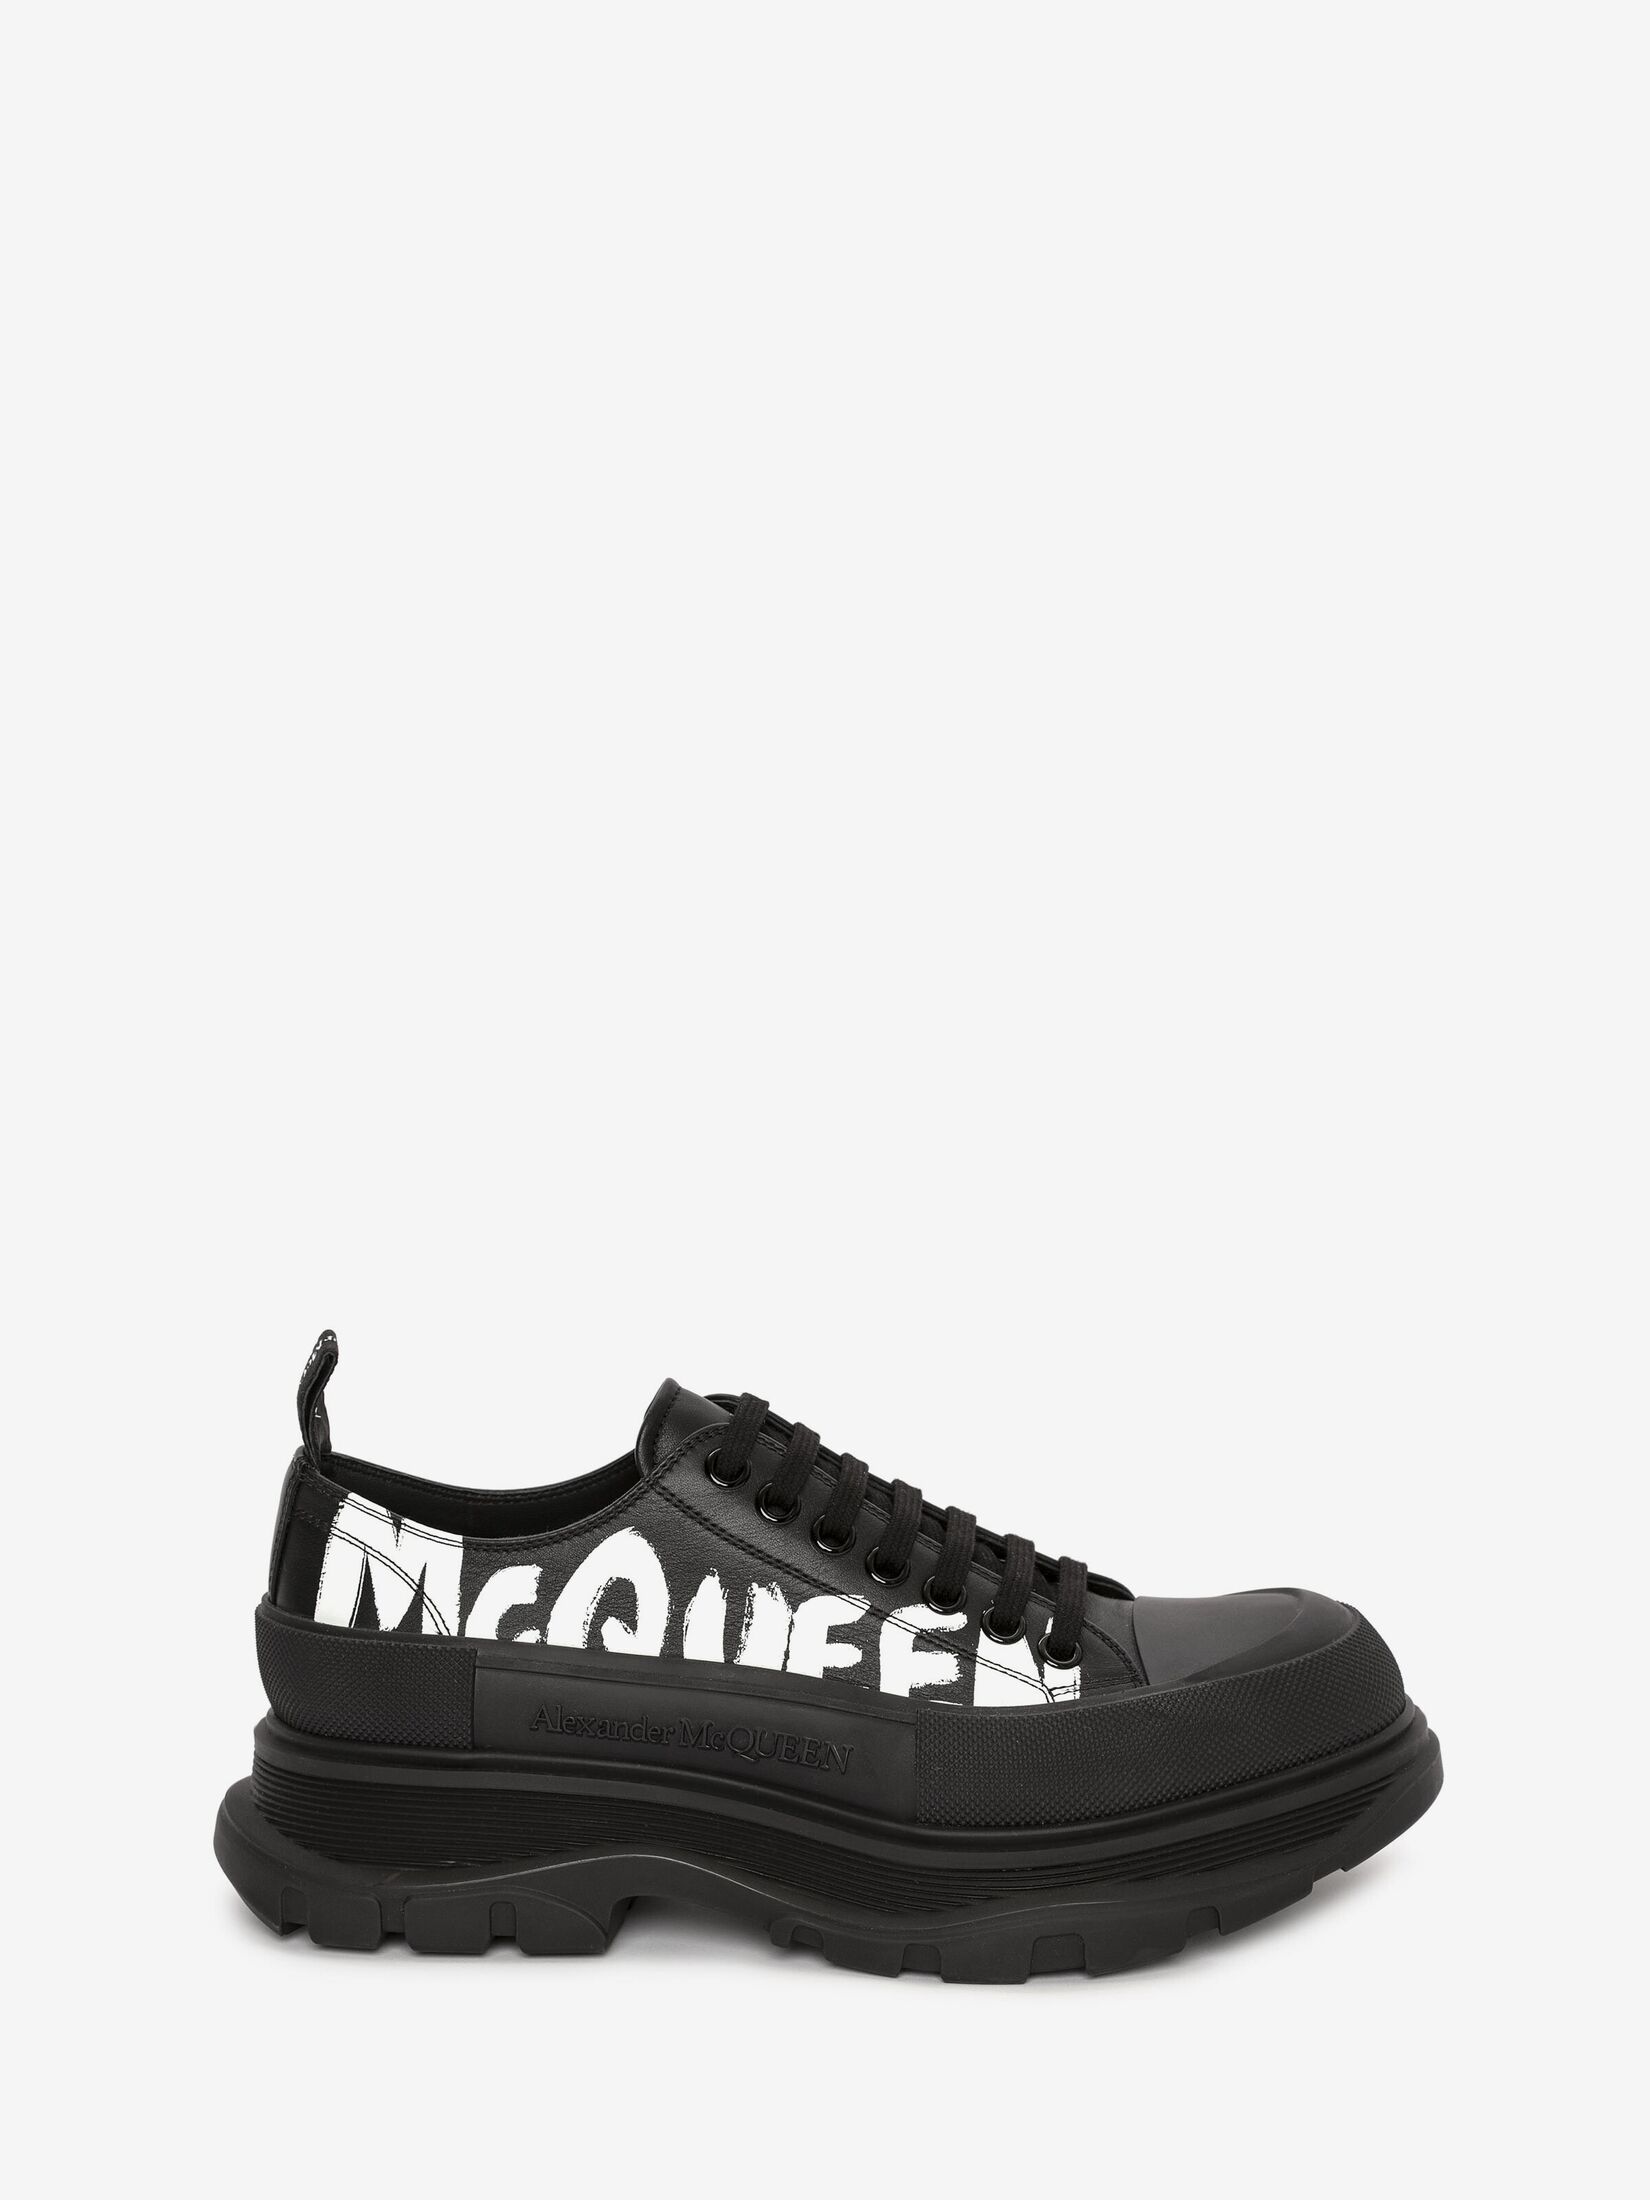 Alexander McQueen Tread Slick lace-up sneakers - Black